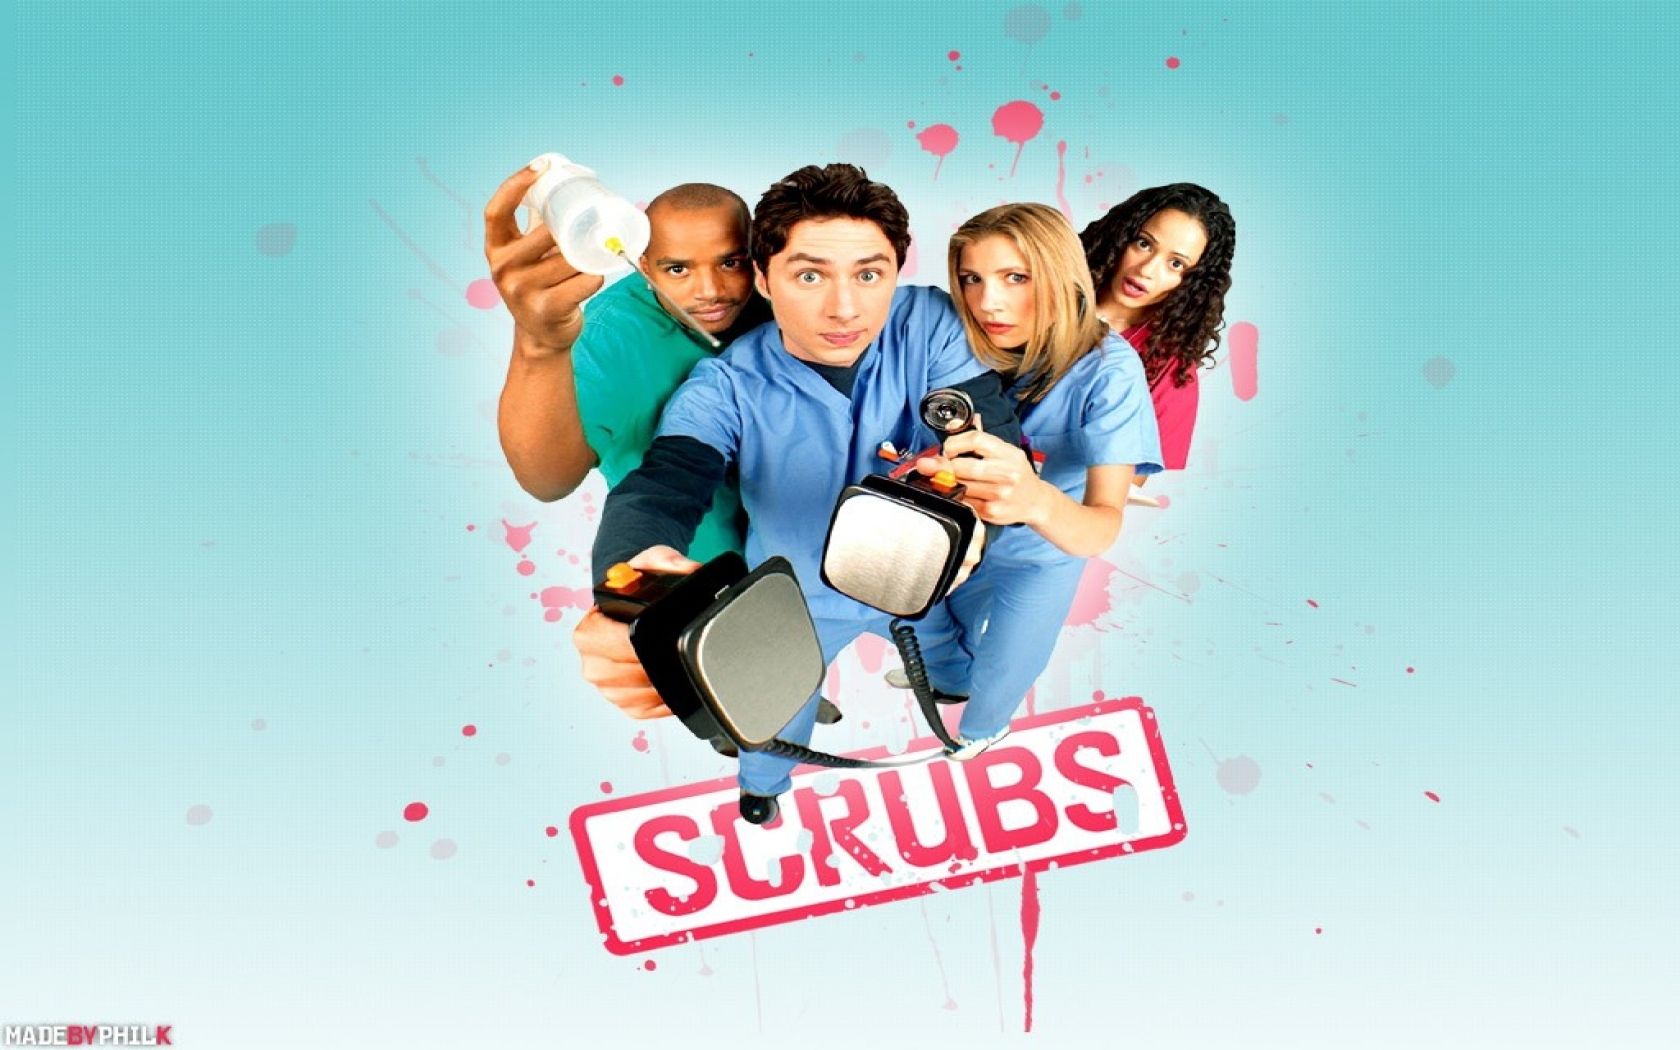 Scrubs - Scrubs Wallpaper 926335 - Fanpop